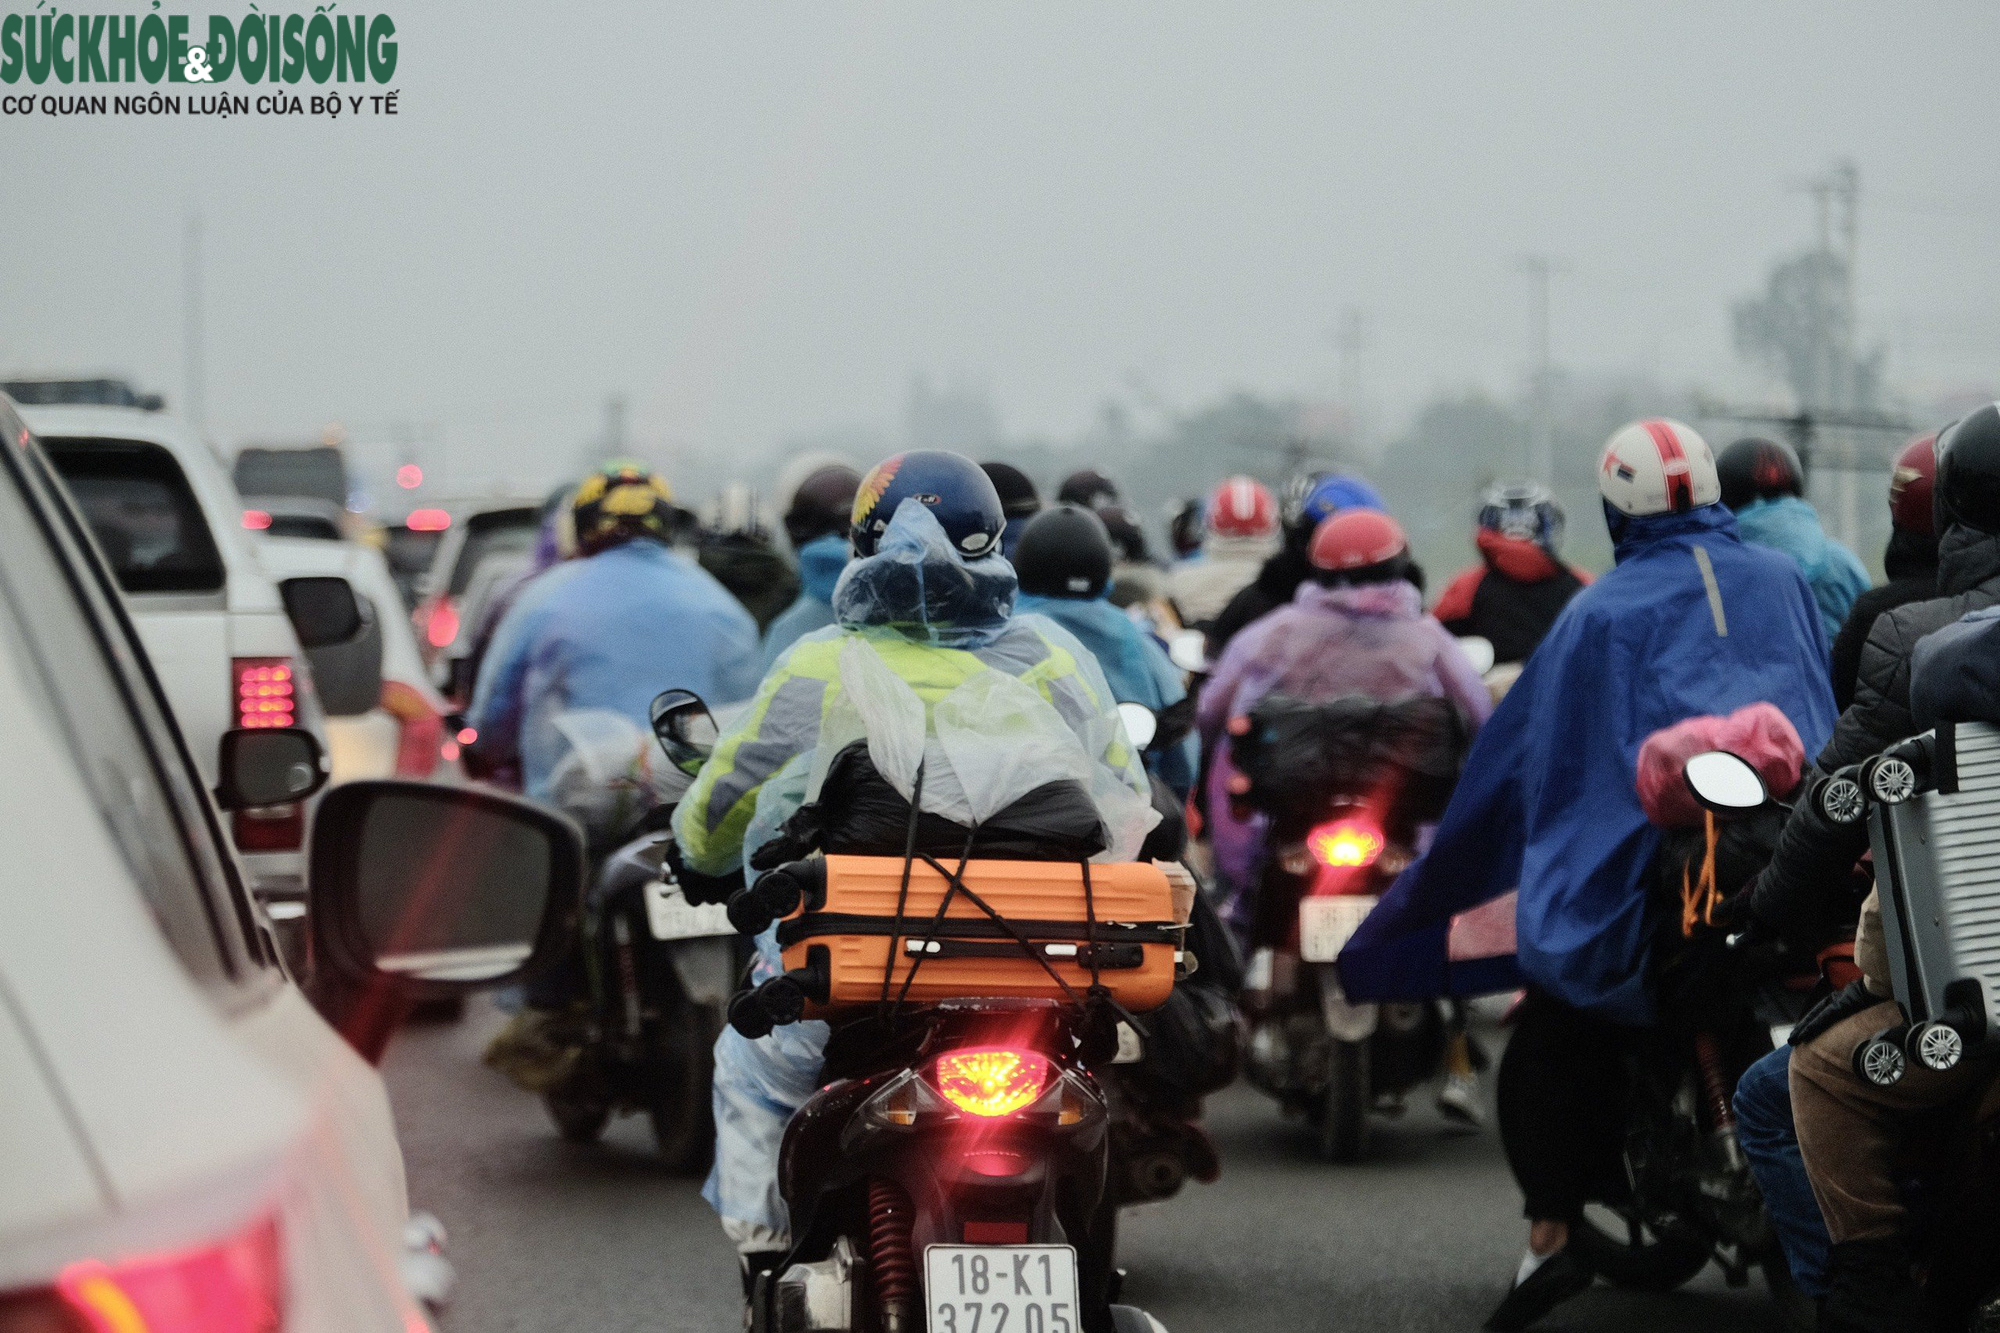 Hàng ngàn người dân đội mưa, ùn ùn đổ về Hà Nội sau nghỉ Tết - Ảnh 18.